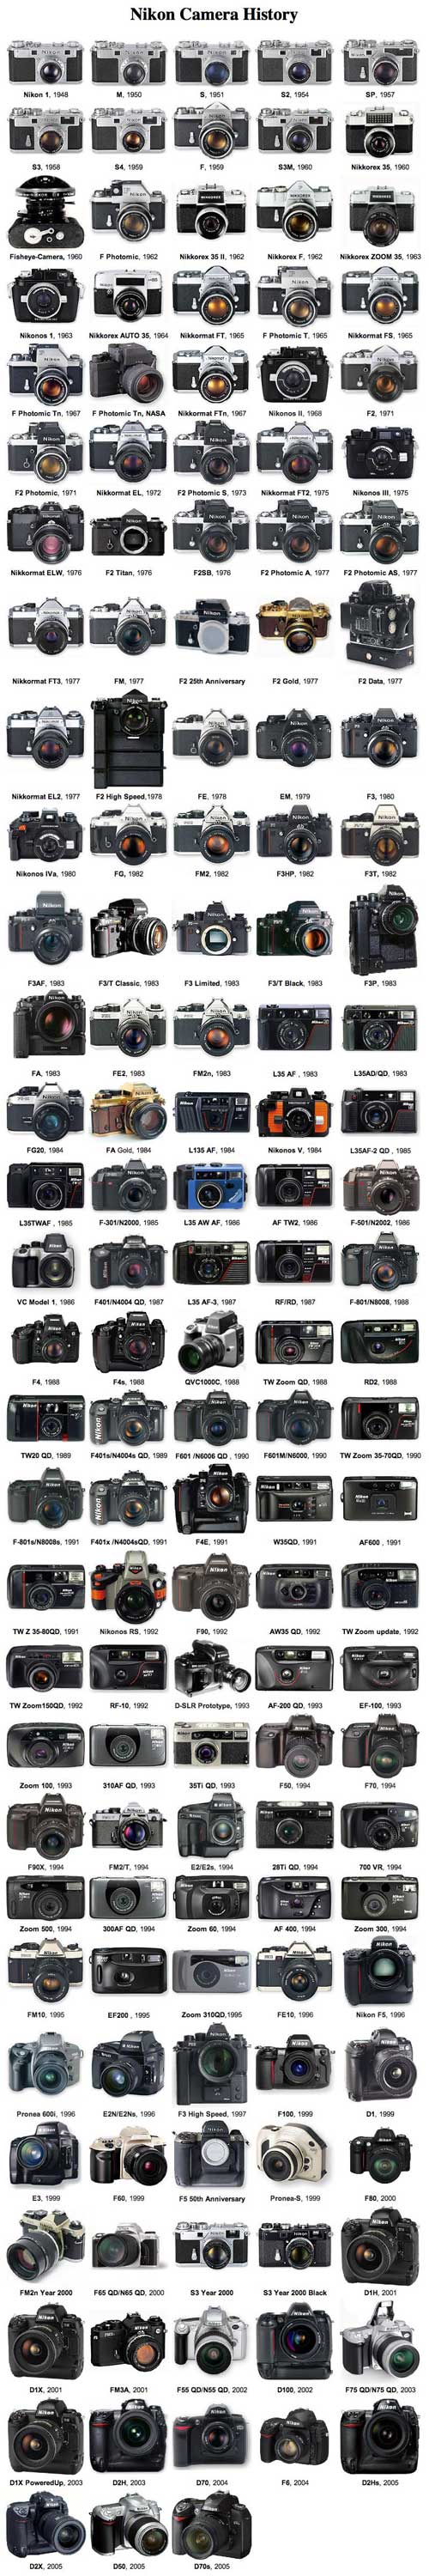 All nikon (d)slr cameras (250kb)